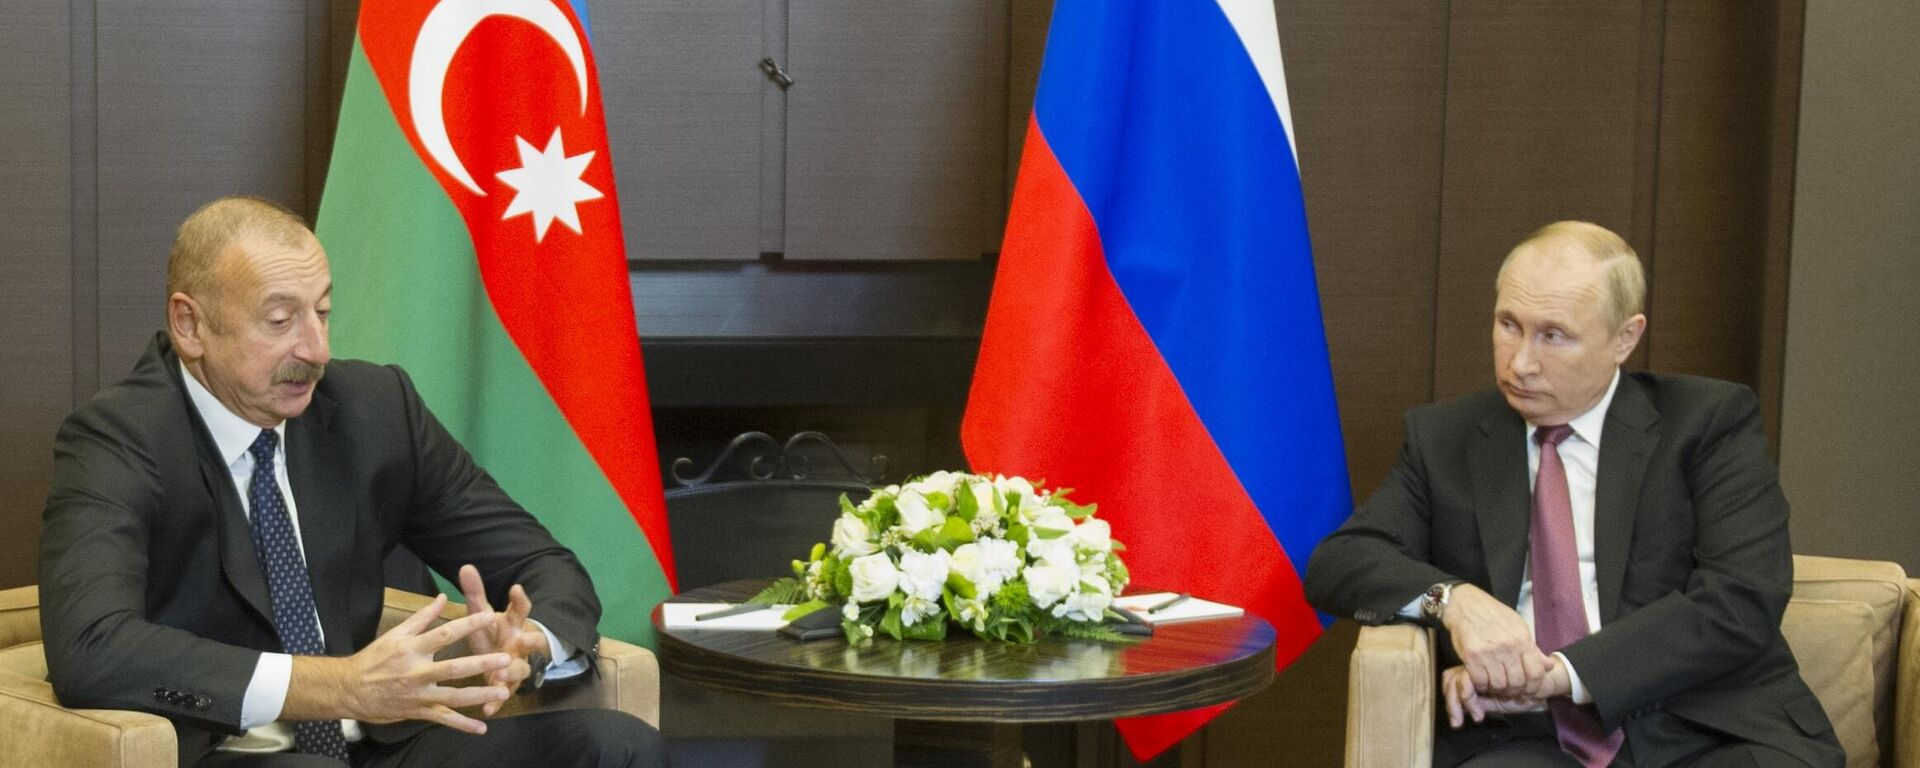 Tổng thống Nga Vladimir Putin gặp Tổng thống Azerbaijan Ilham Aliyev tại Sochi, Nga. - Sputnik Việt Nam, 1920, 26.11.2021